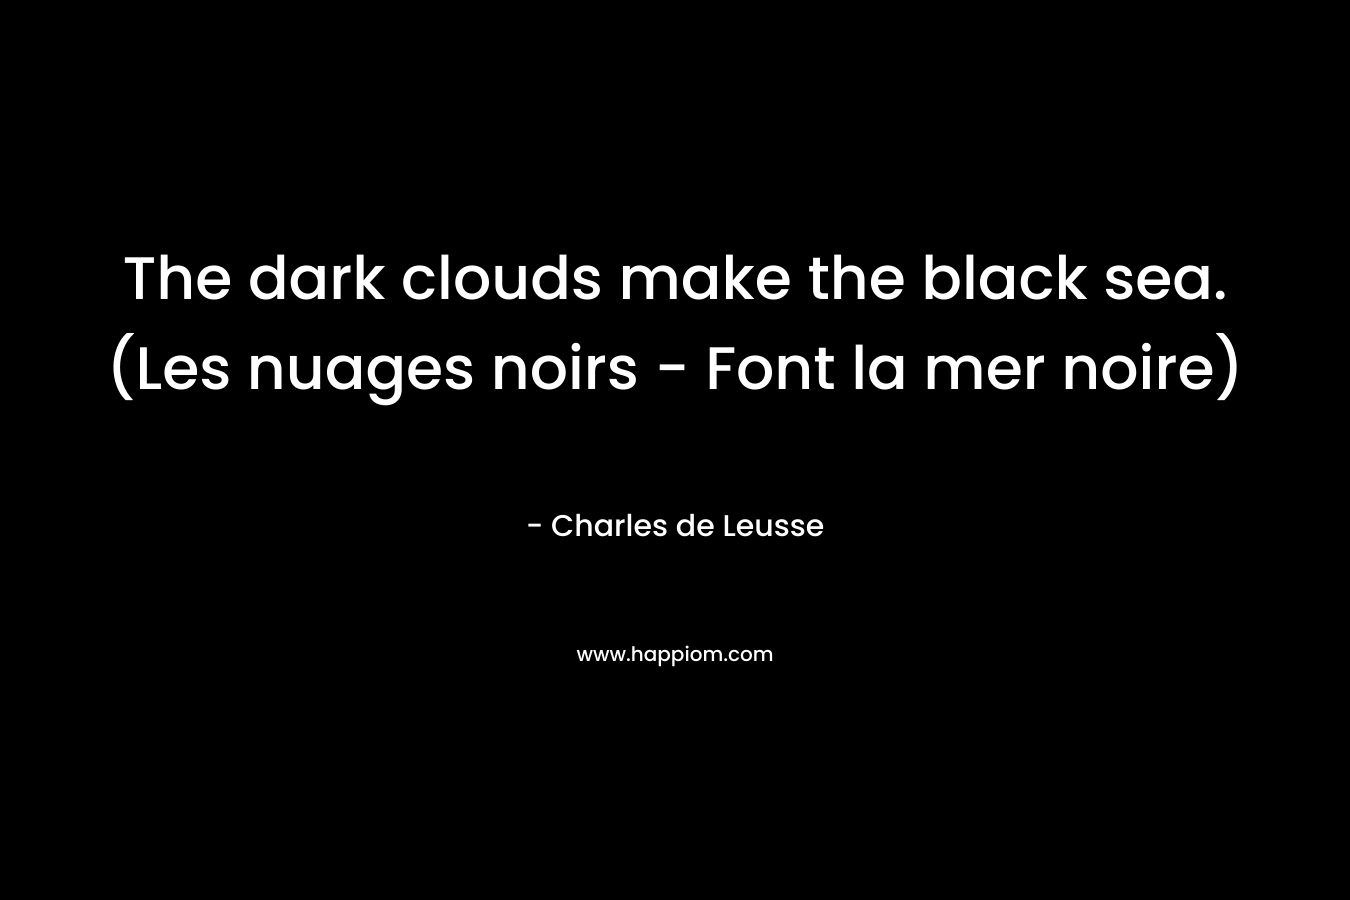 The dark clouds make the black sea. (Les nuages noirs - Font la mer noire)